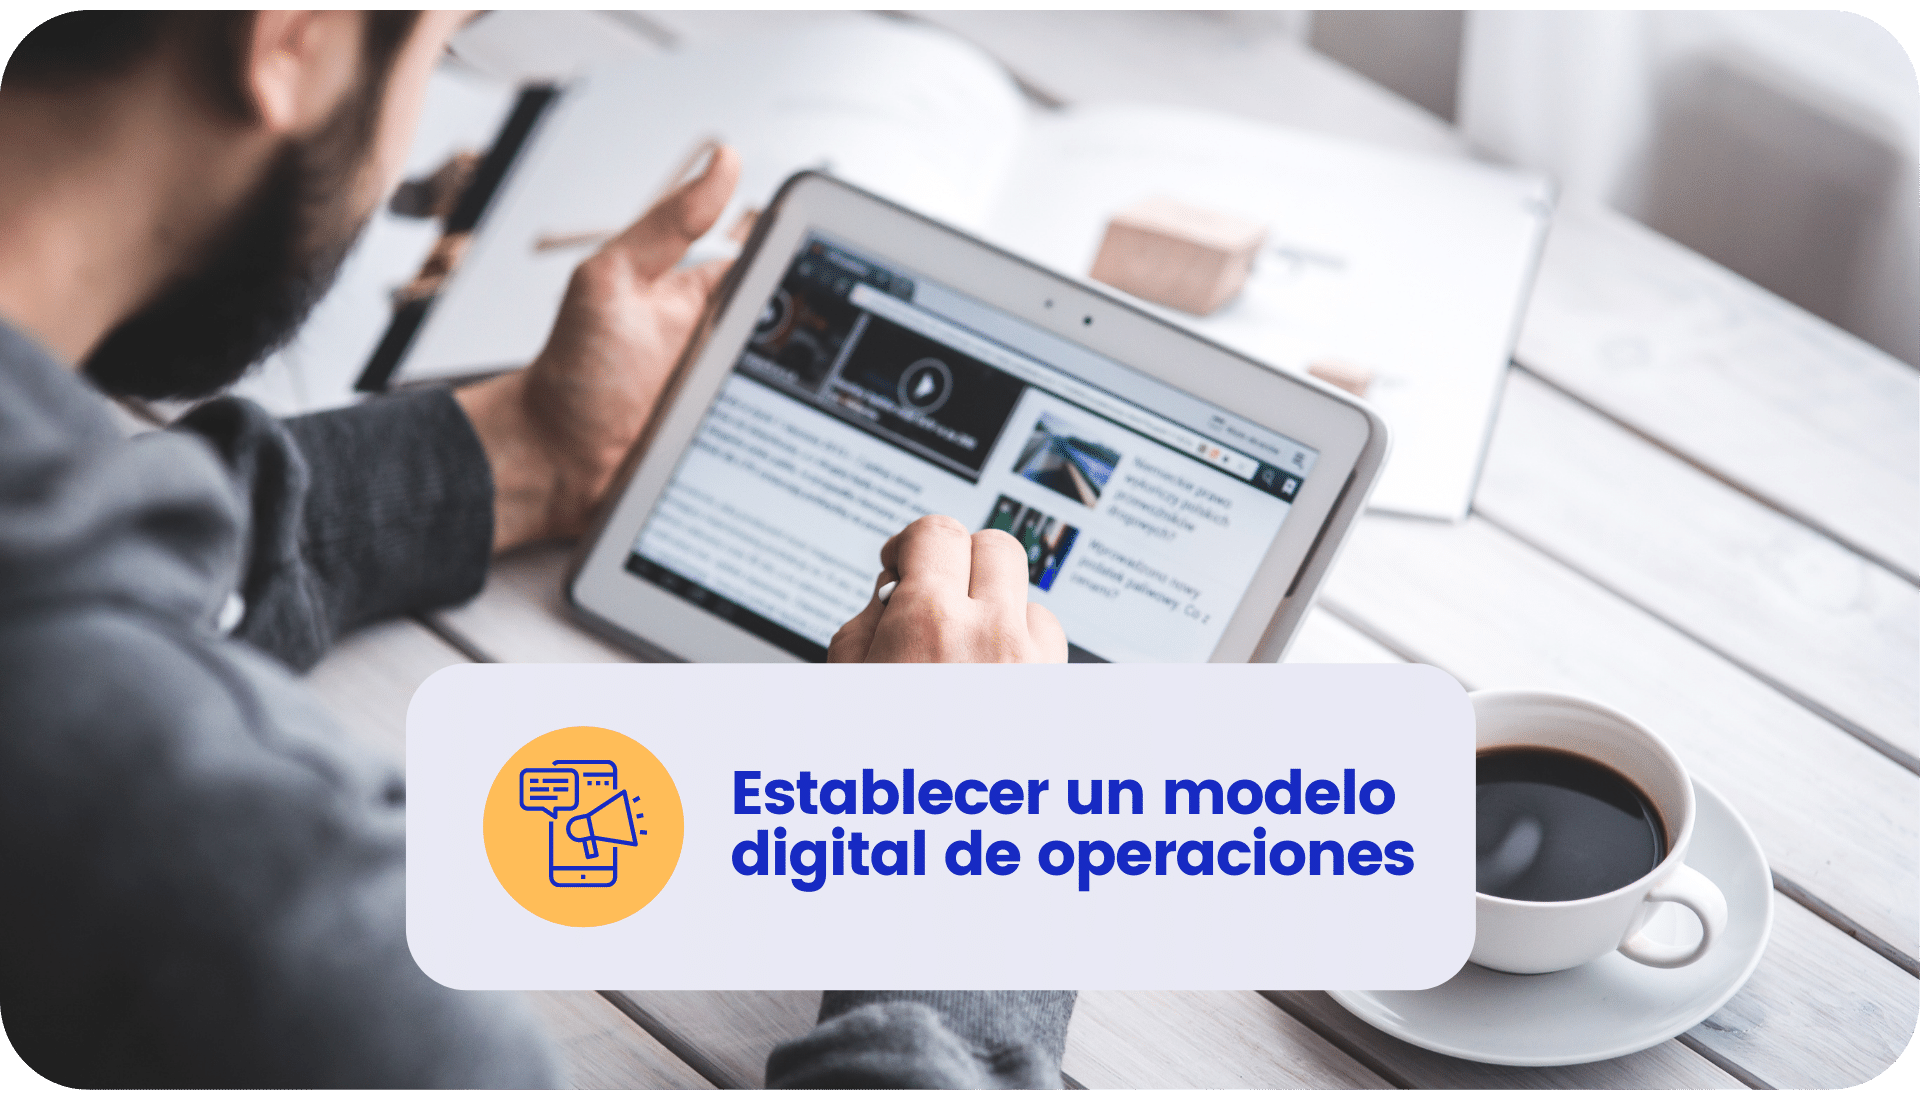 Establecer un modelo digital de operaciones